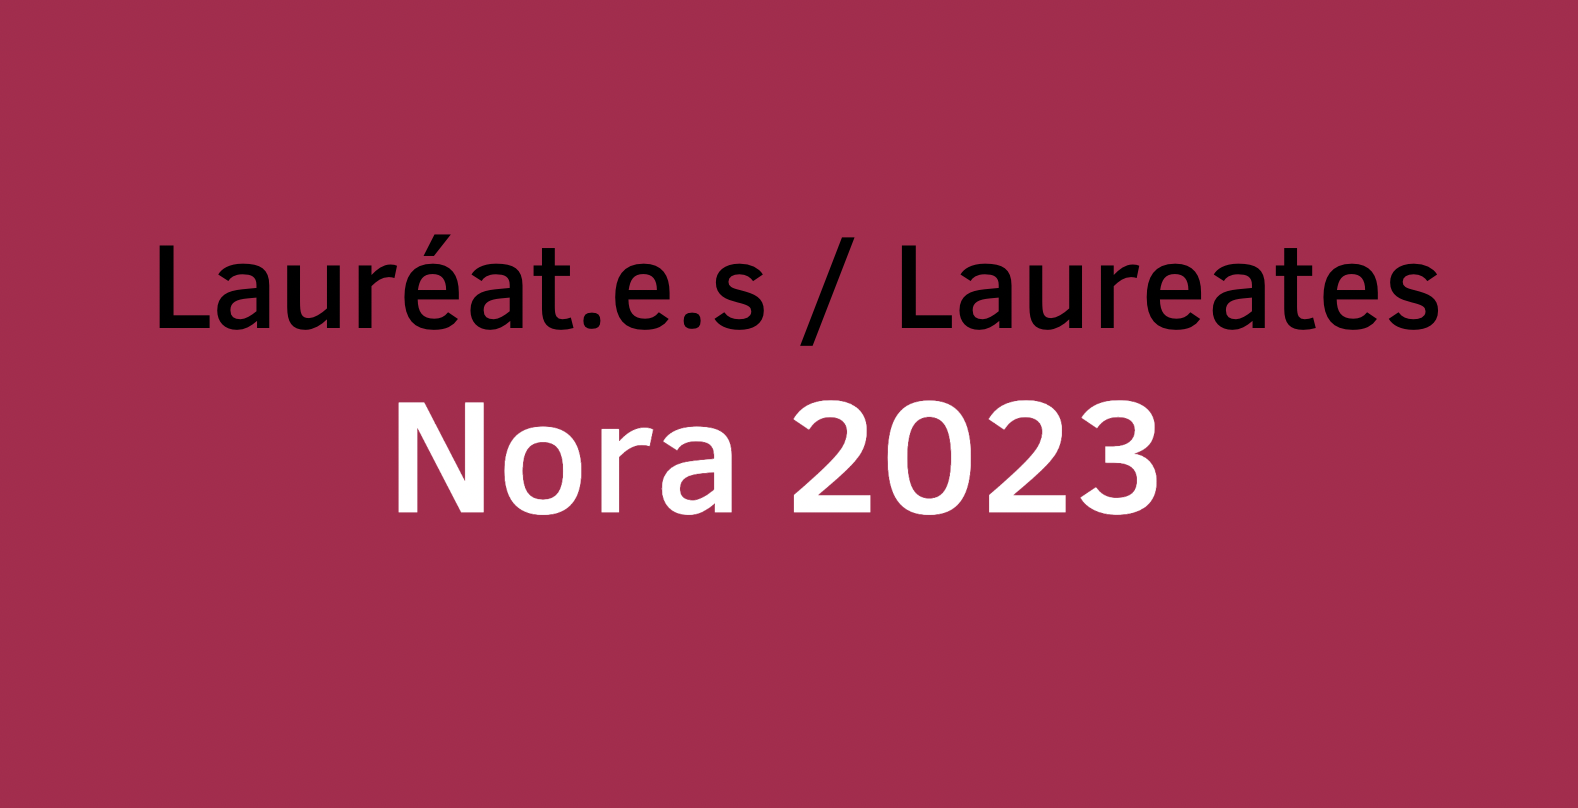 Les lauréats NORA 2023